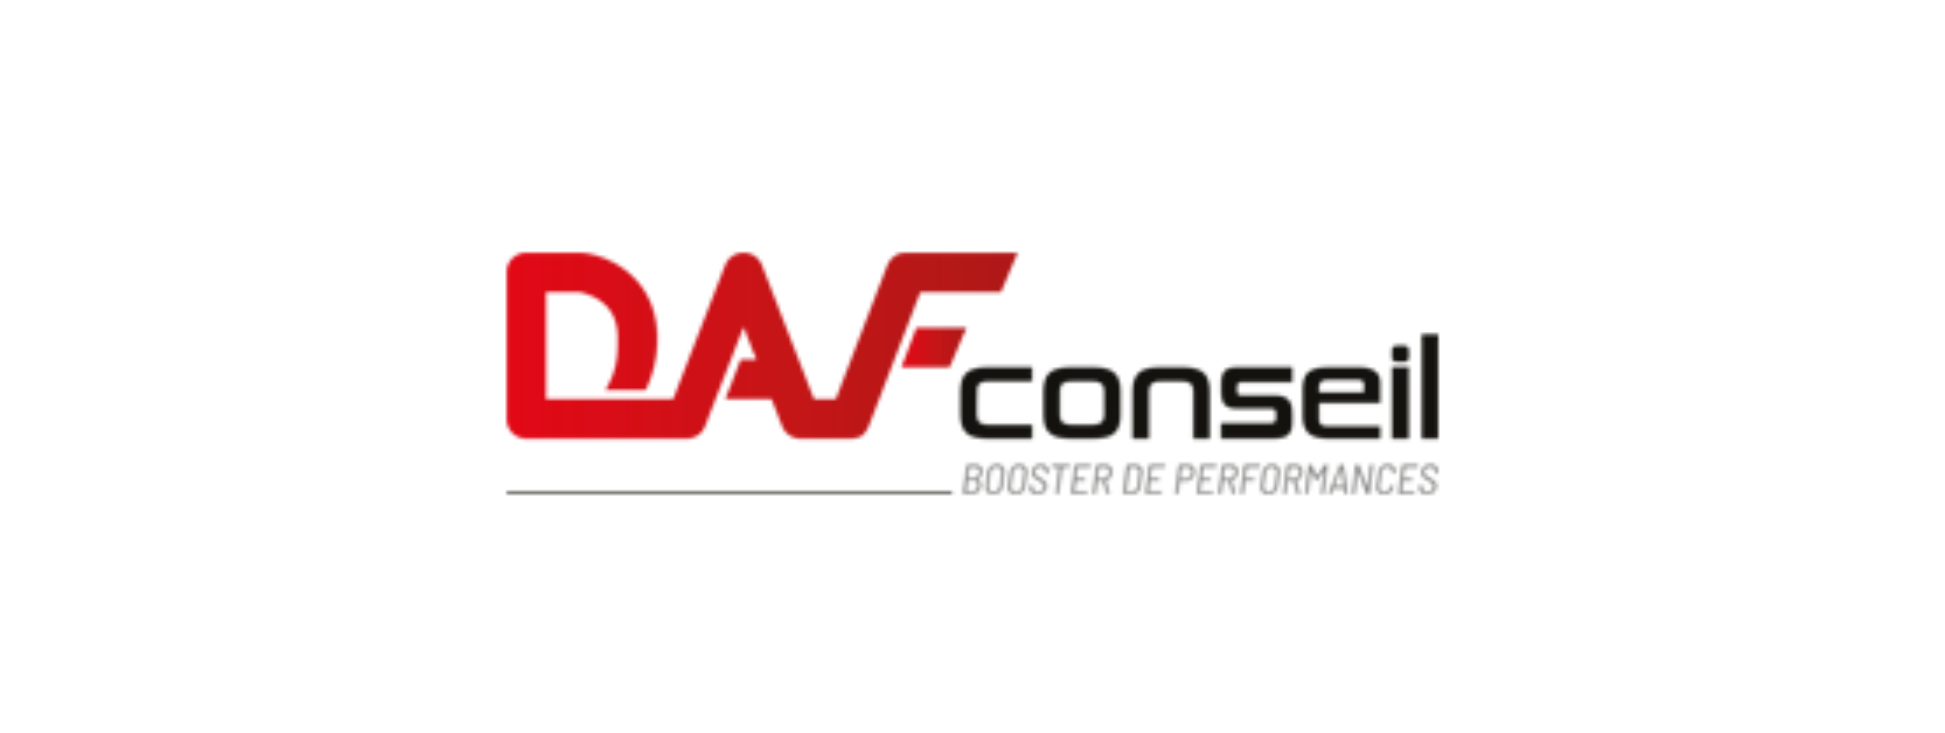 daf conseil logo